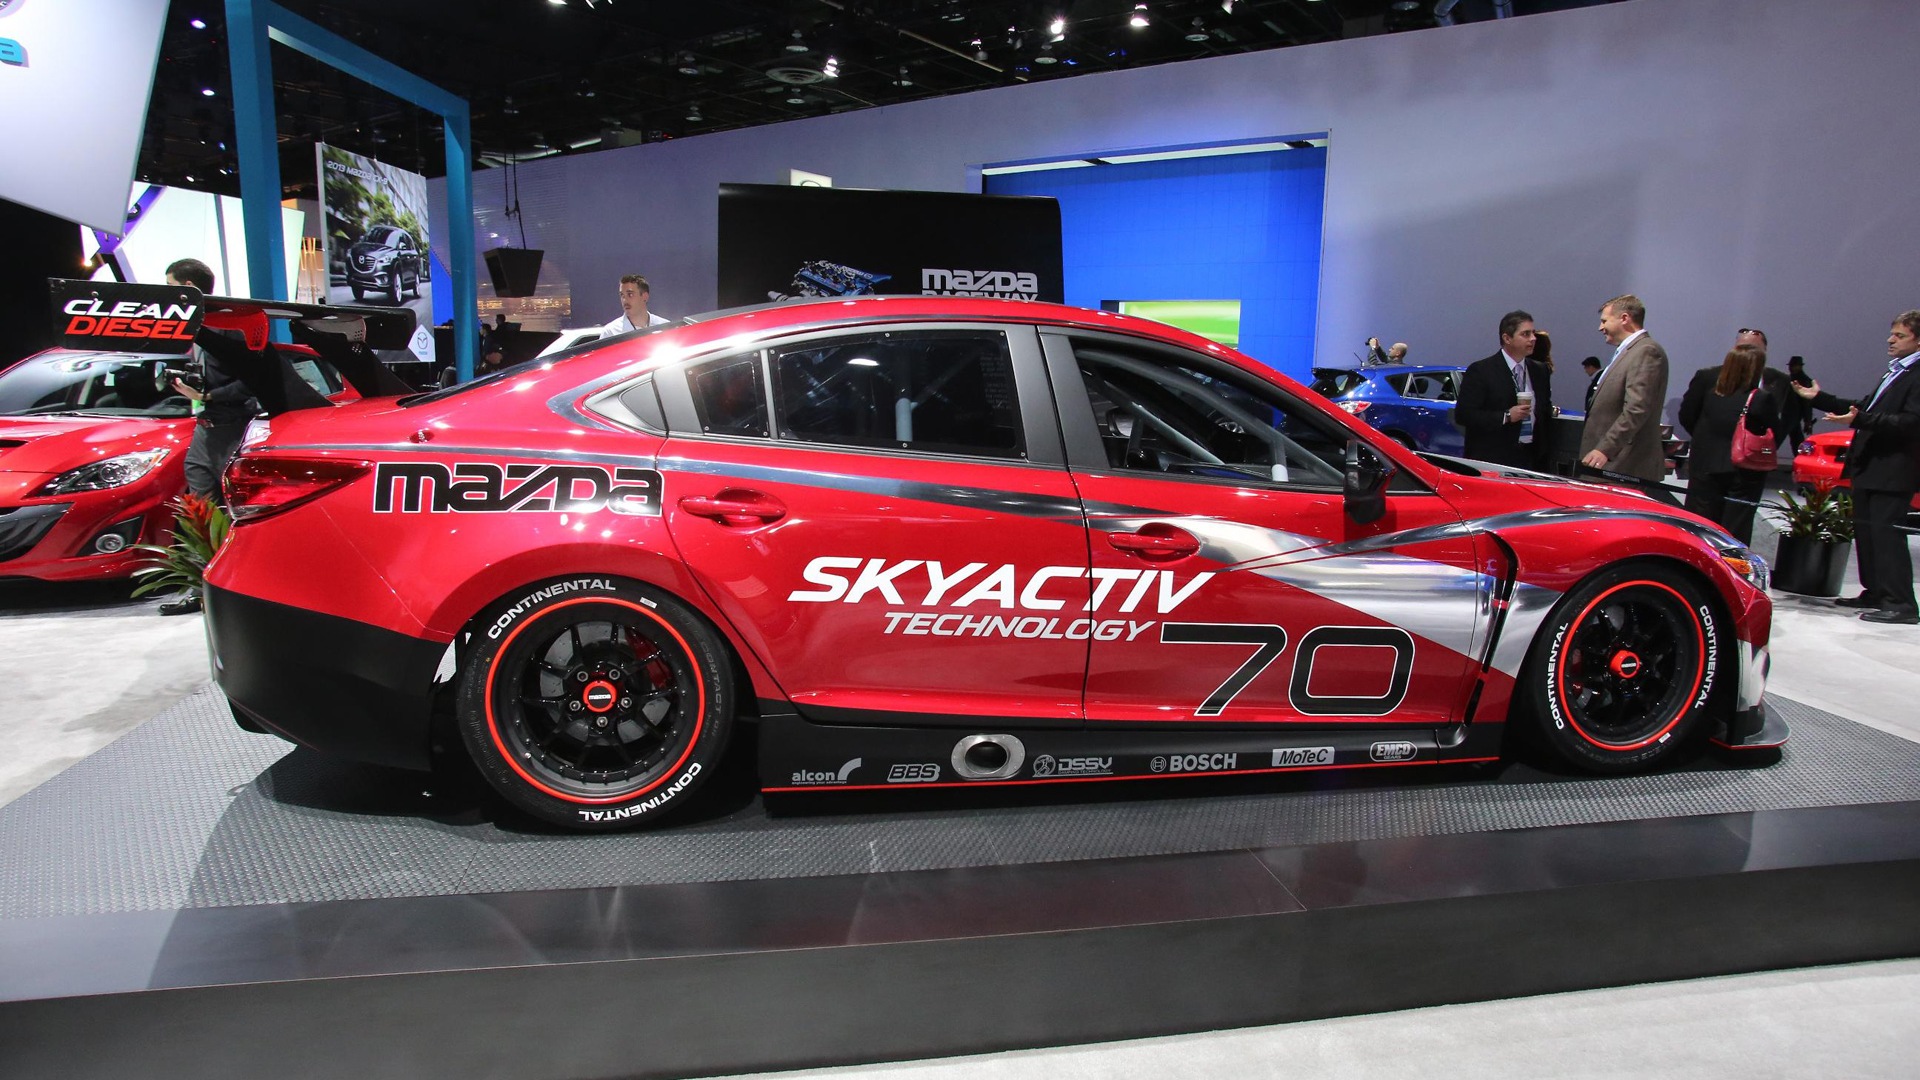 2013 Mazda 6 Skyactiv-D race car 马自达 高清壁纸2 - 1920x1080